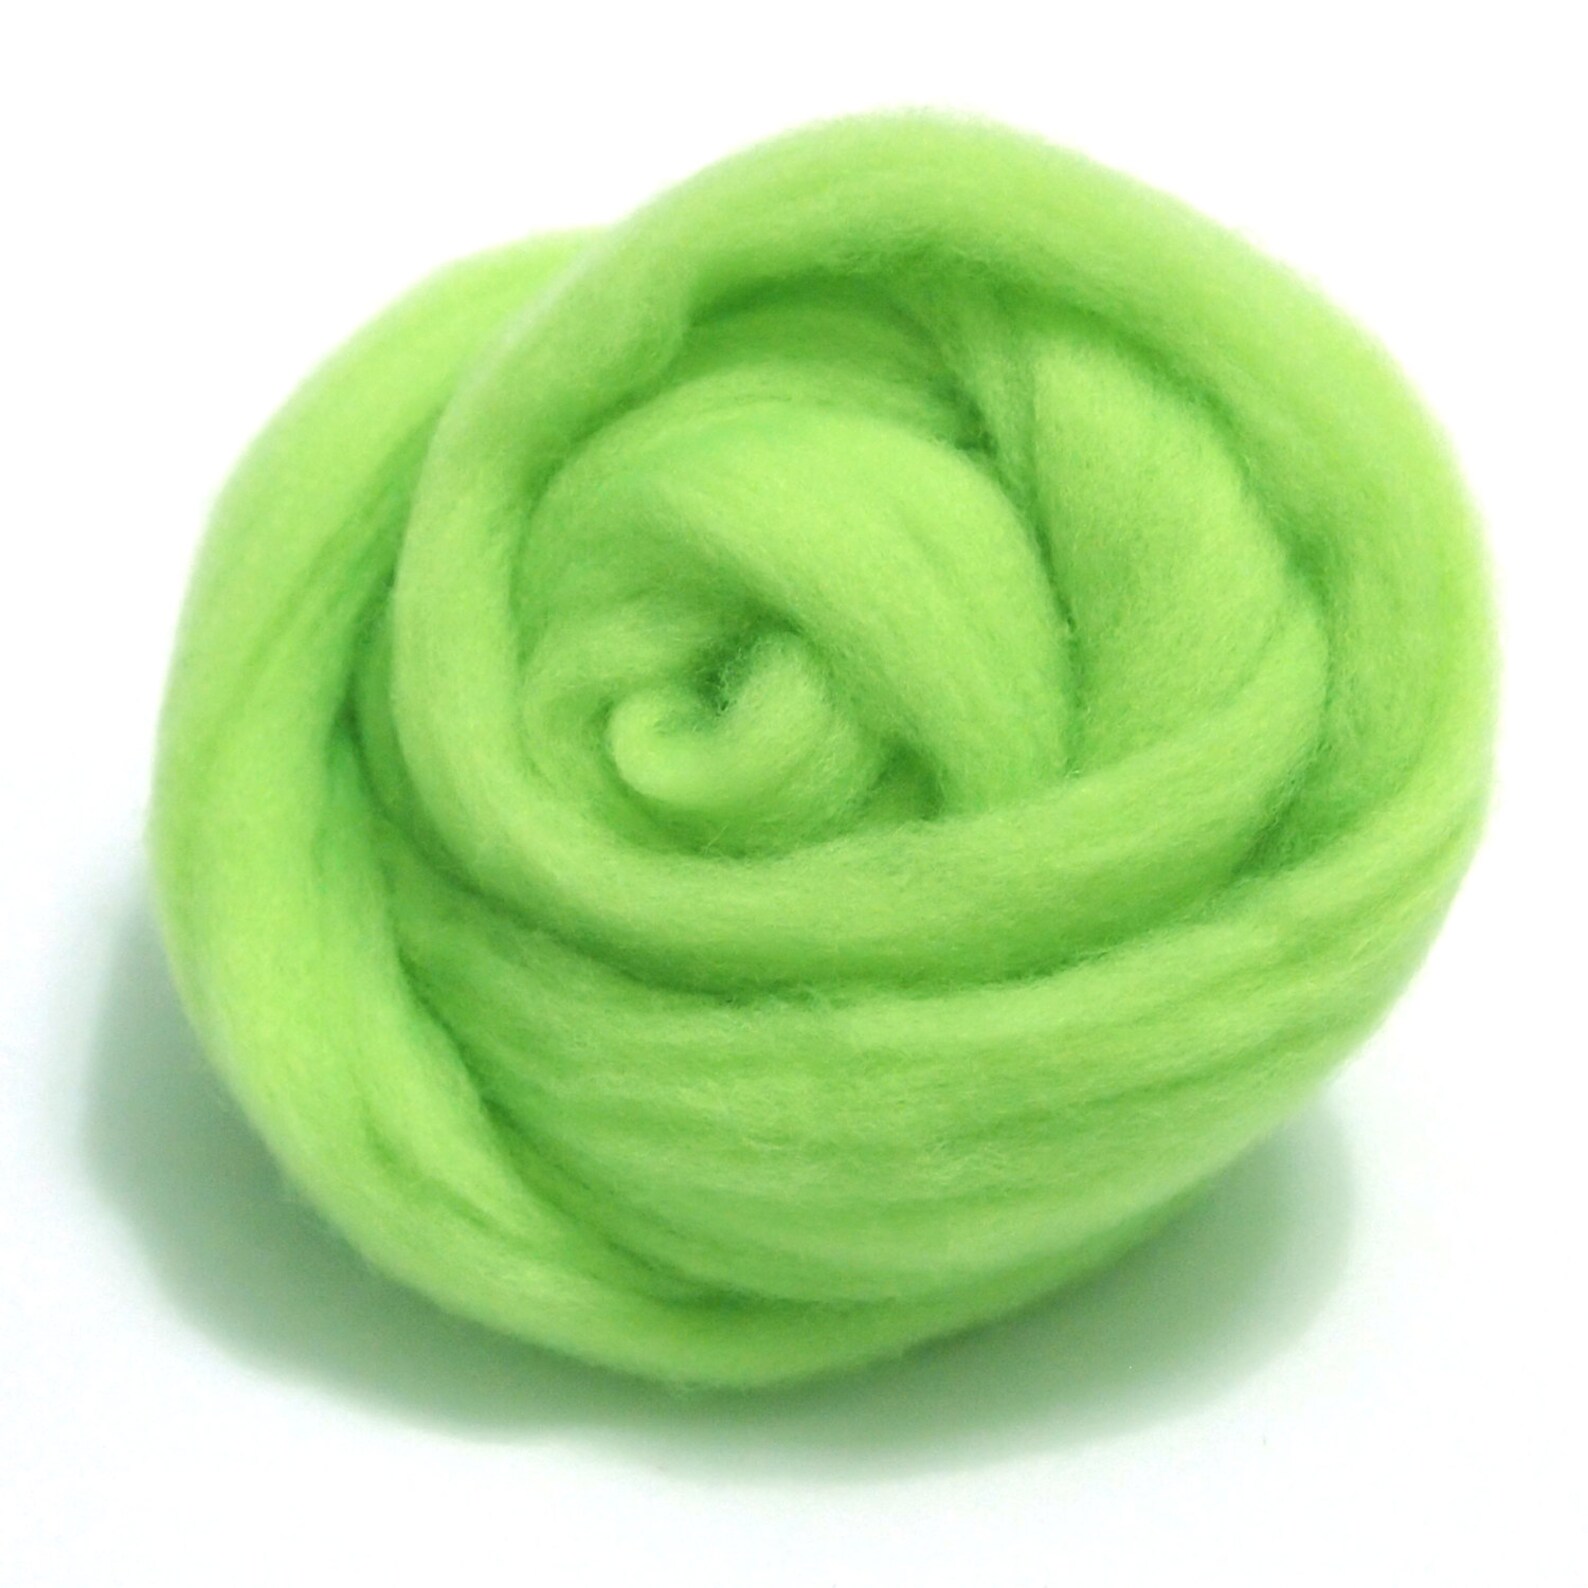 Валяние зеленое яблоко. Предмет из шерсти зеленого цвета. Игрушки для игрушки шорты для валяния маленькие и легкие.